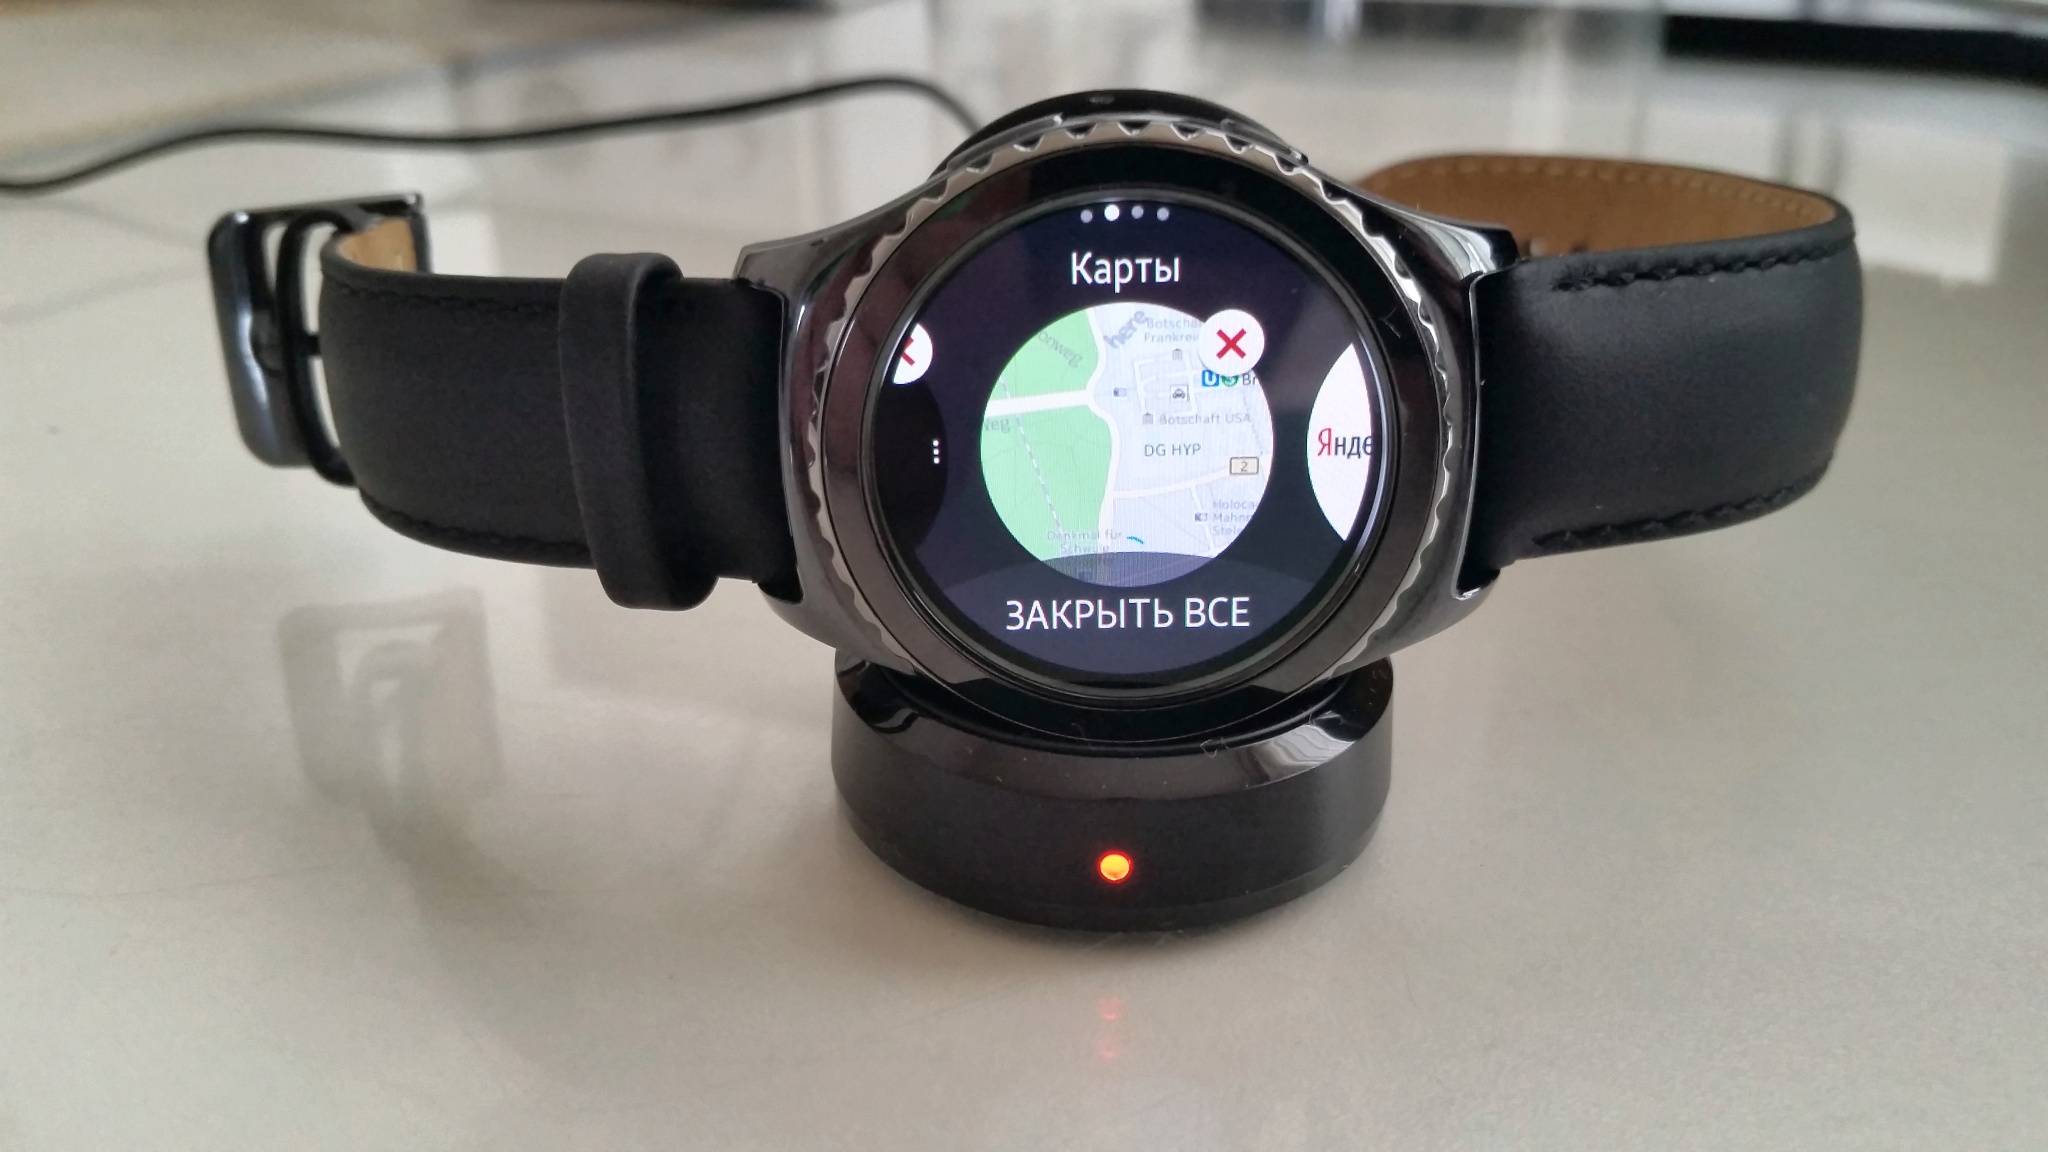 Обзор samsung gear s2 - смарт-часы с уникальной особенностью!